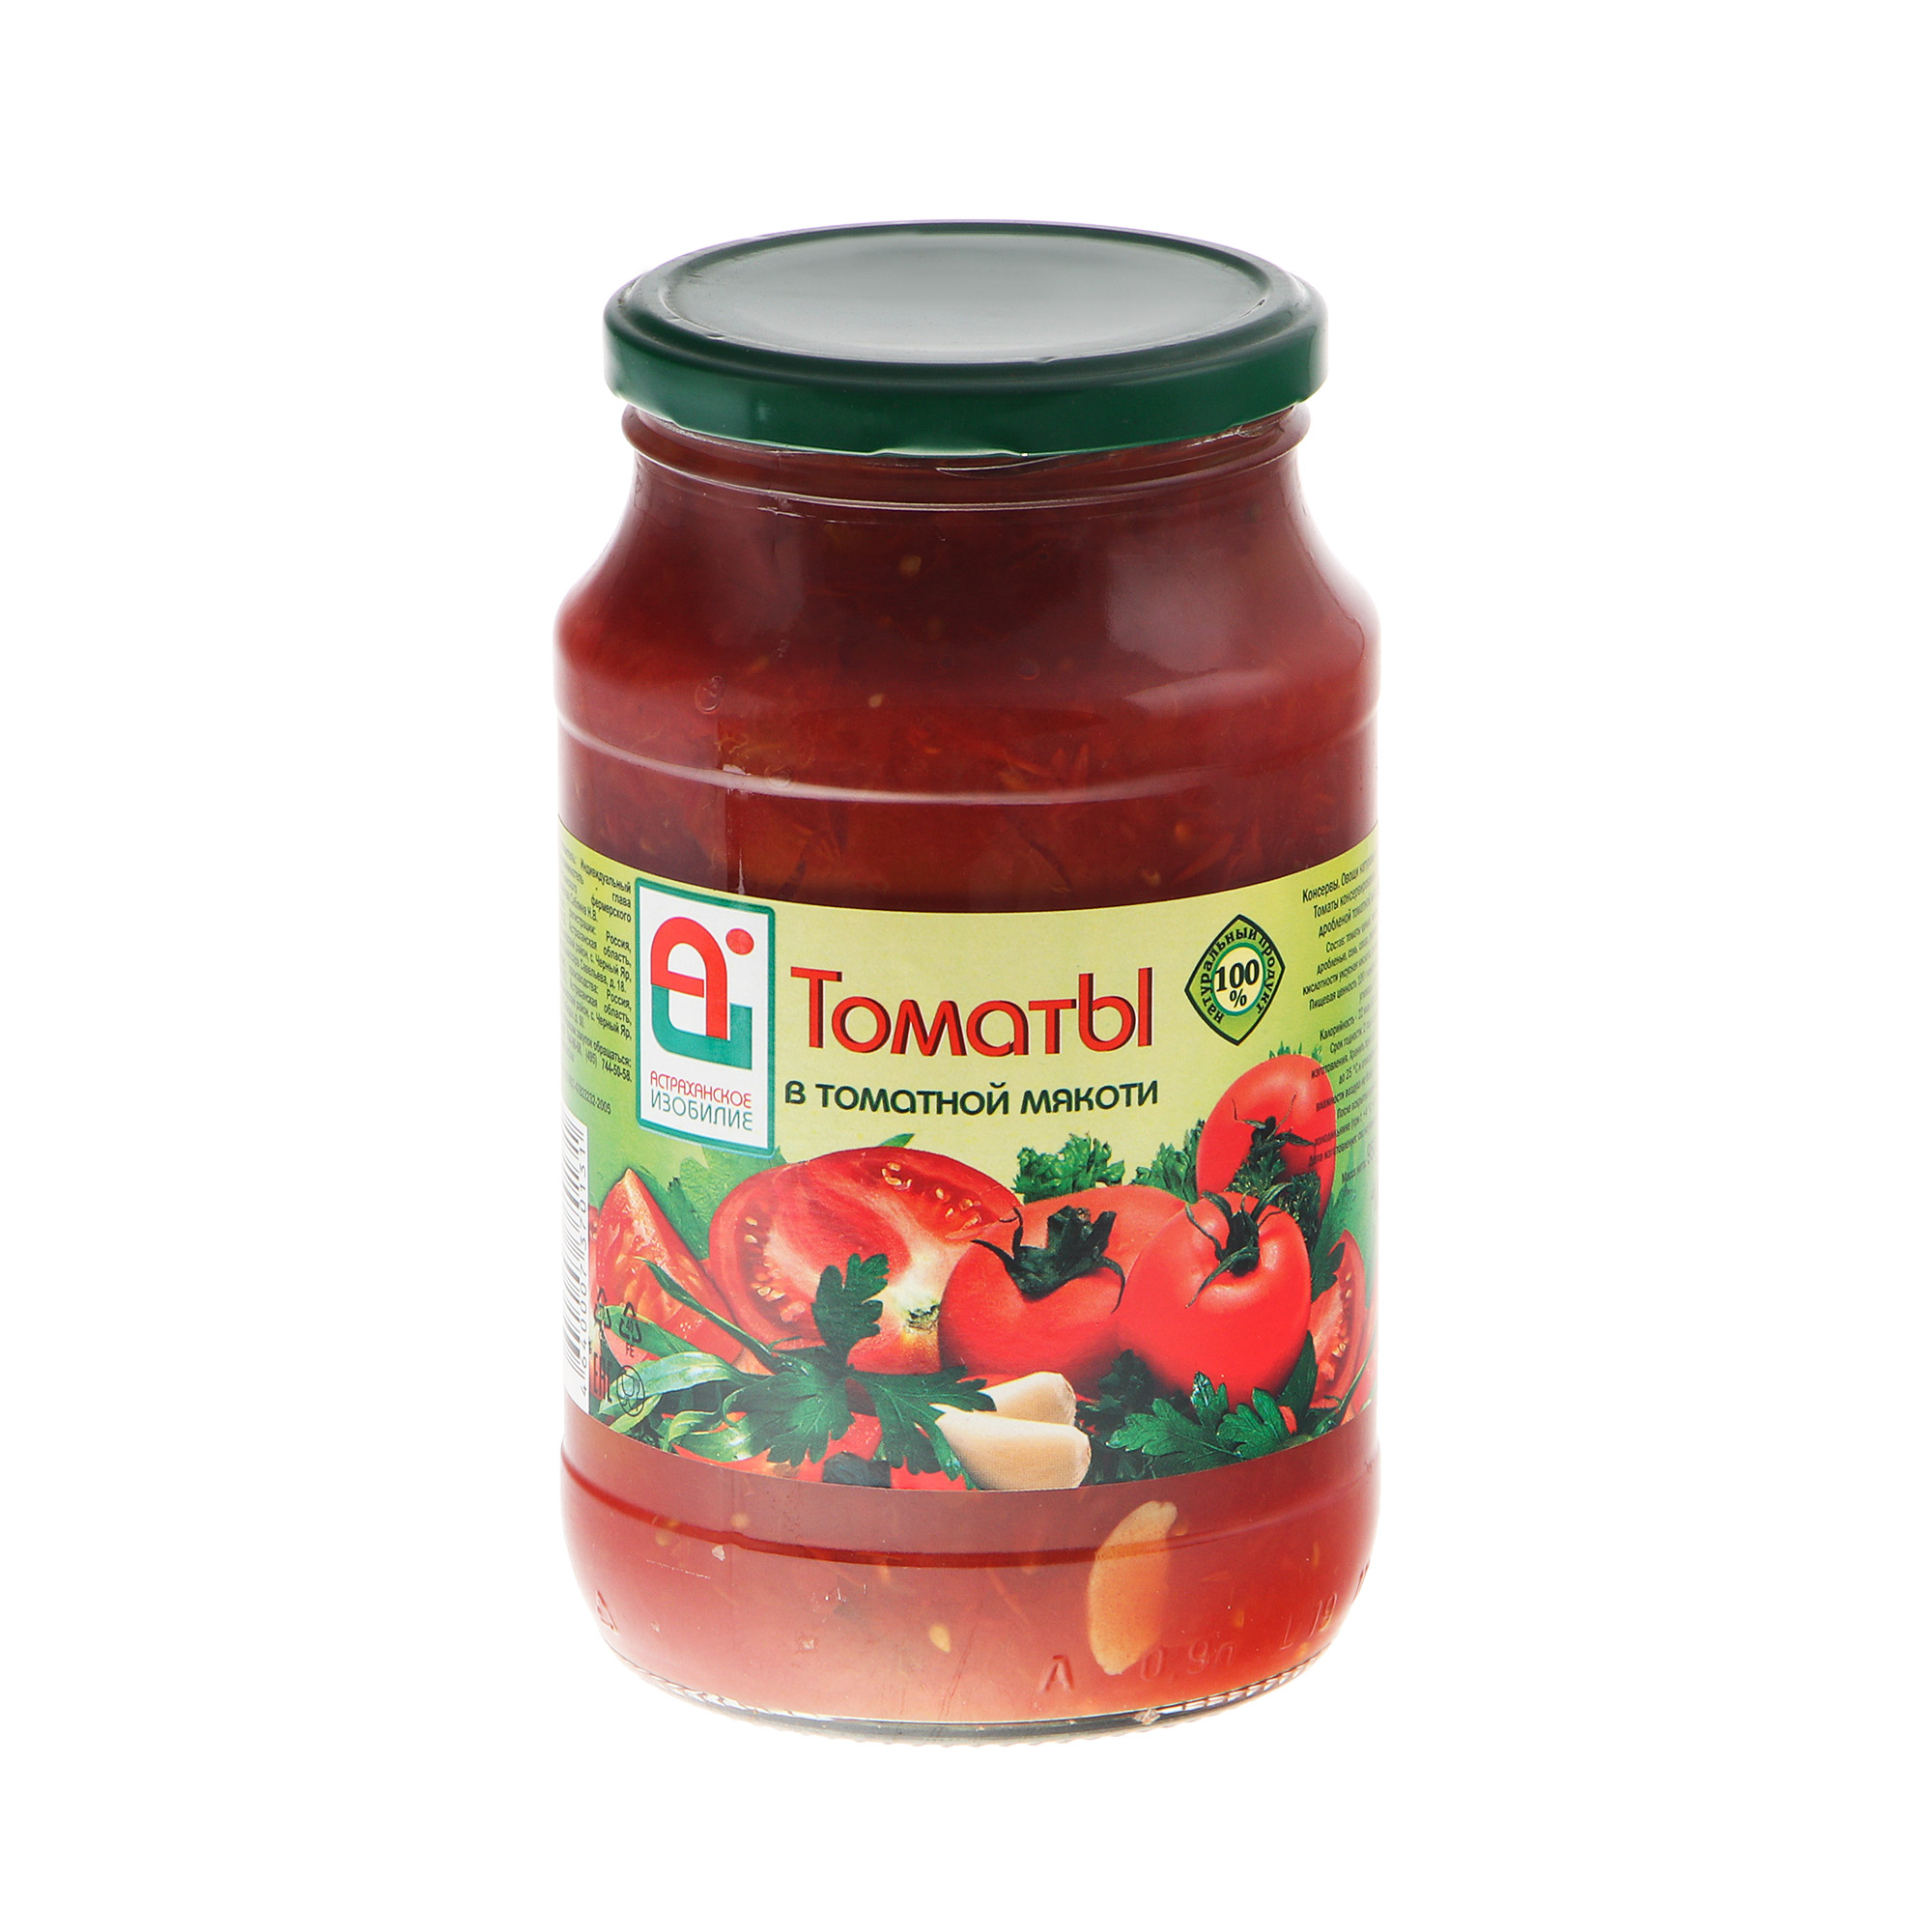 Томаты Астраханское Изобилие в мякоти 950 г томаты астраханское изобилие в мякоти 950 г